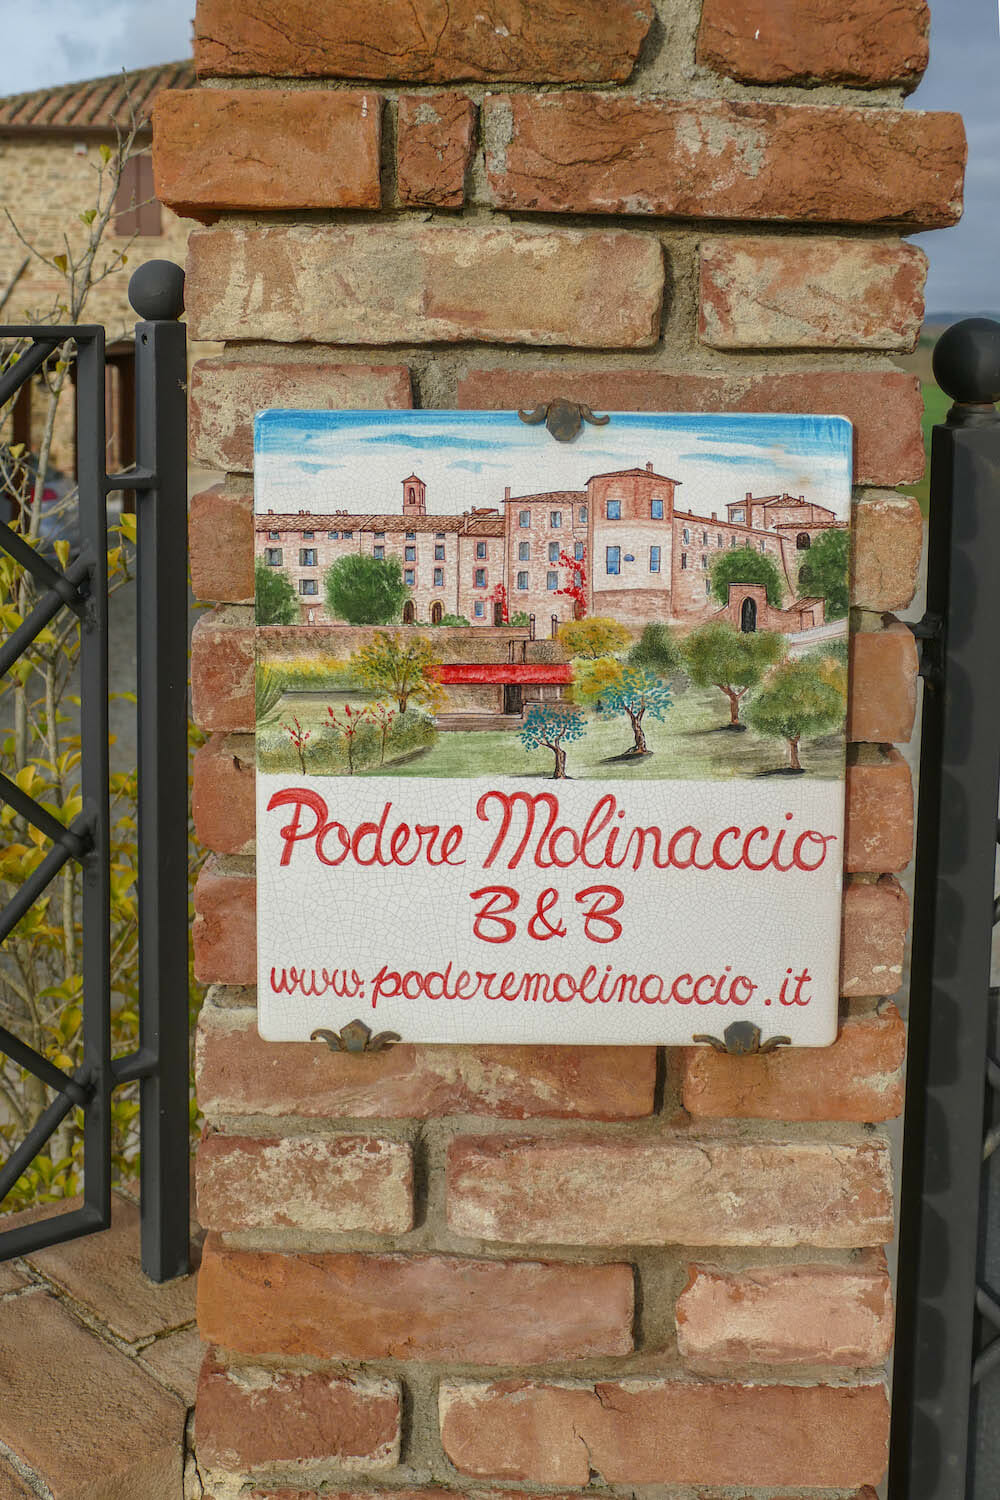 PODERE MOLINACCIO Umbria Italy